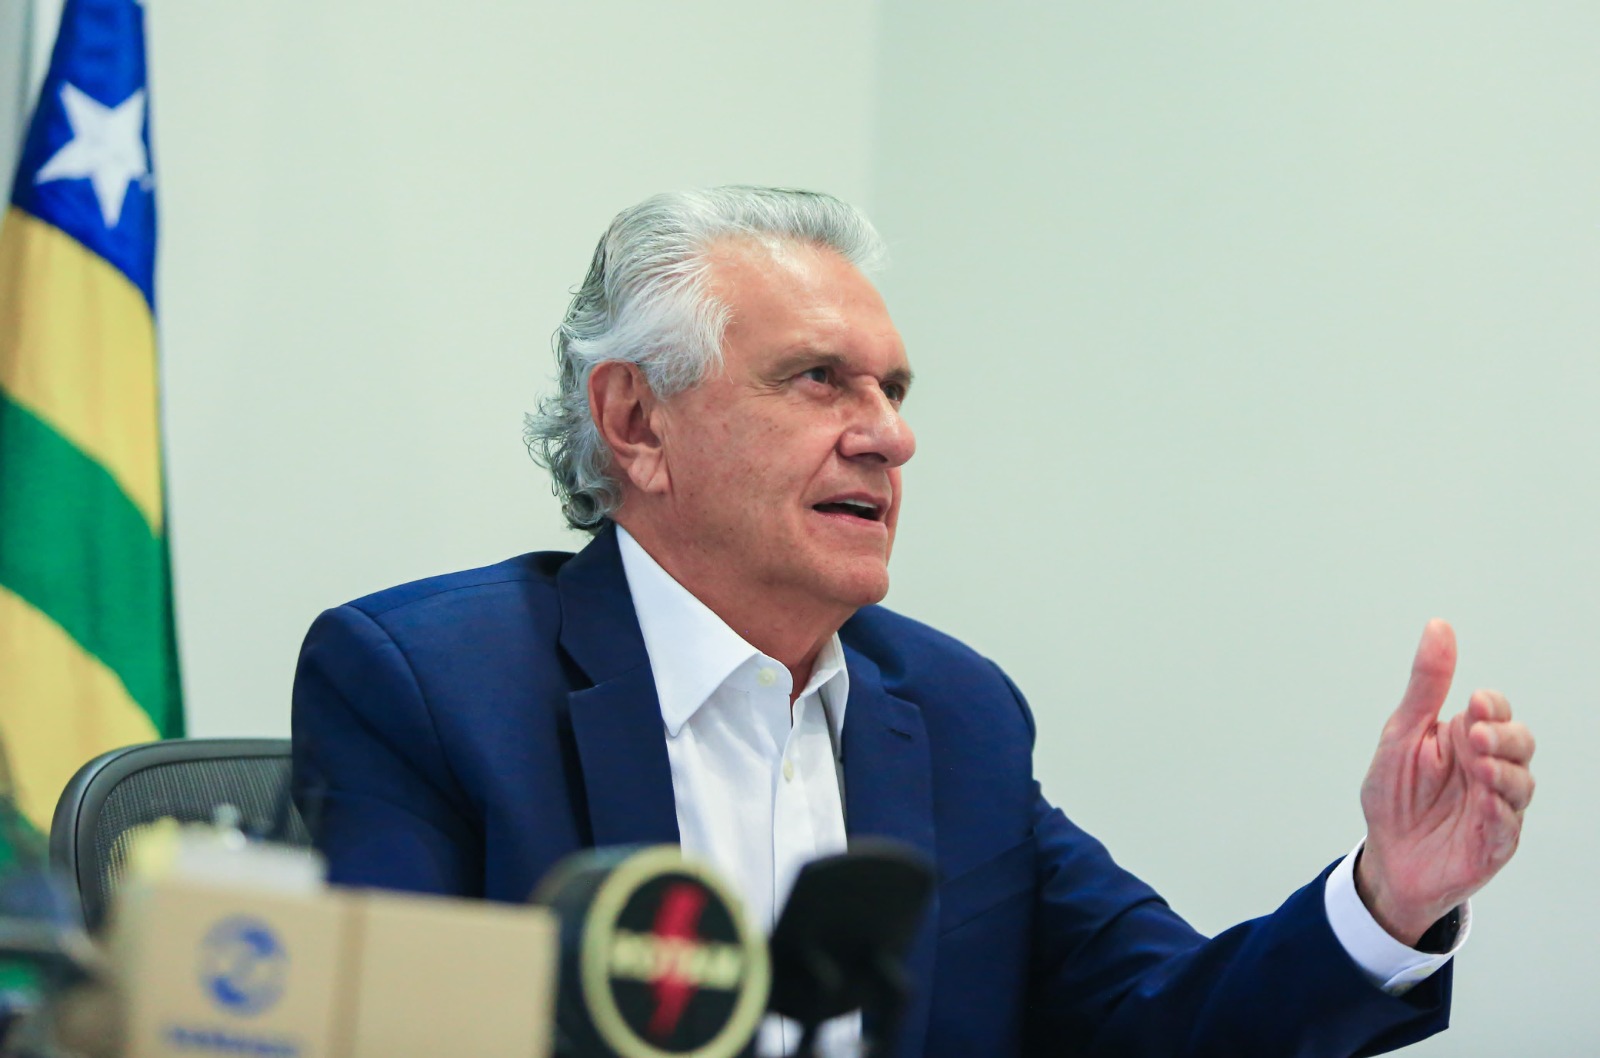 Governador Ronaldo Caiado fala ao portal de notícias UOL: segurança pública em pauta